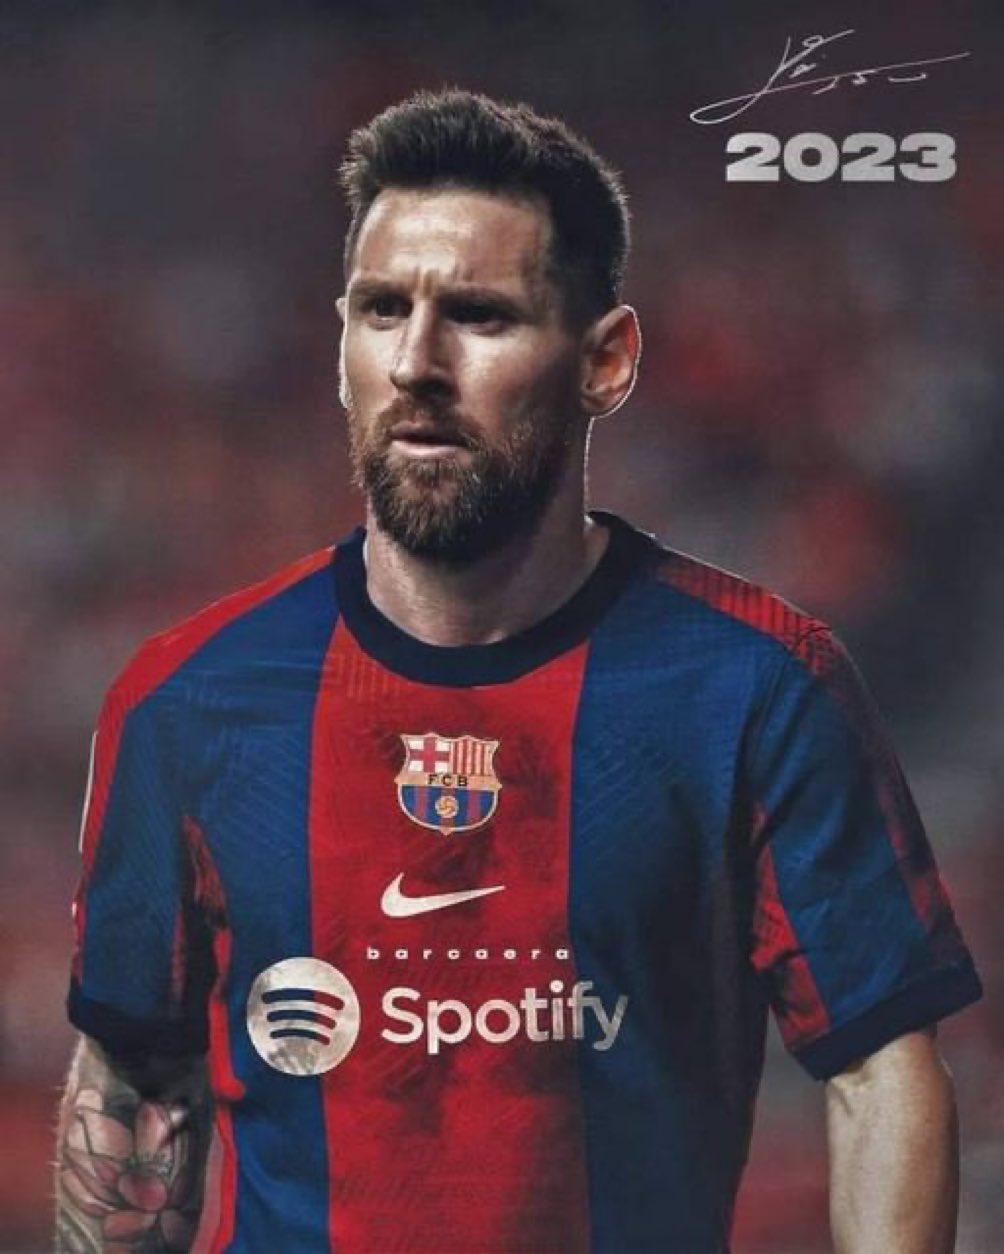 Mateu Padremany Font On Leo Messi The Last Dance